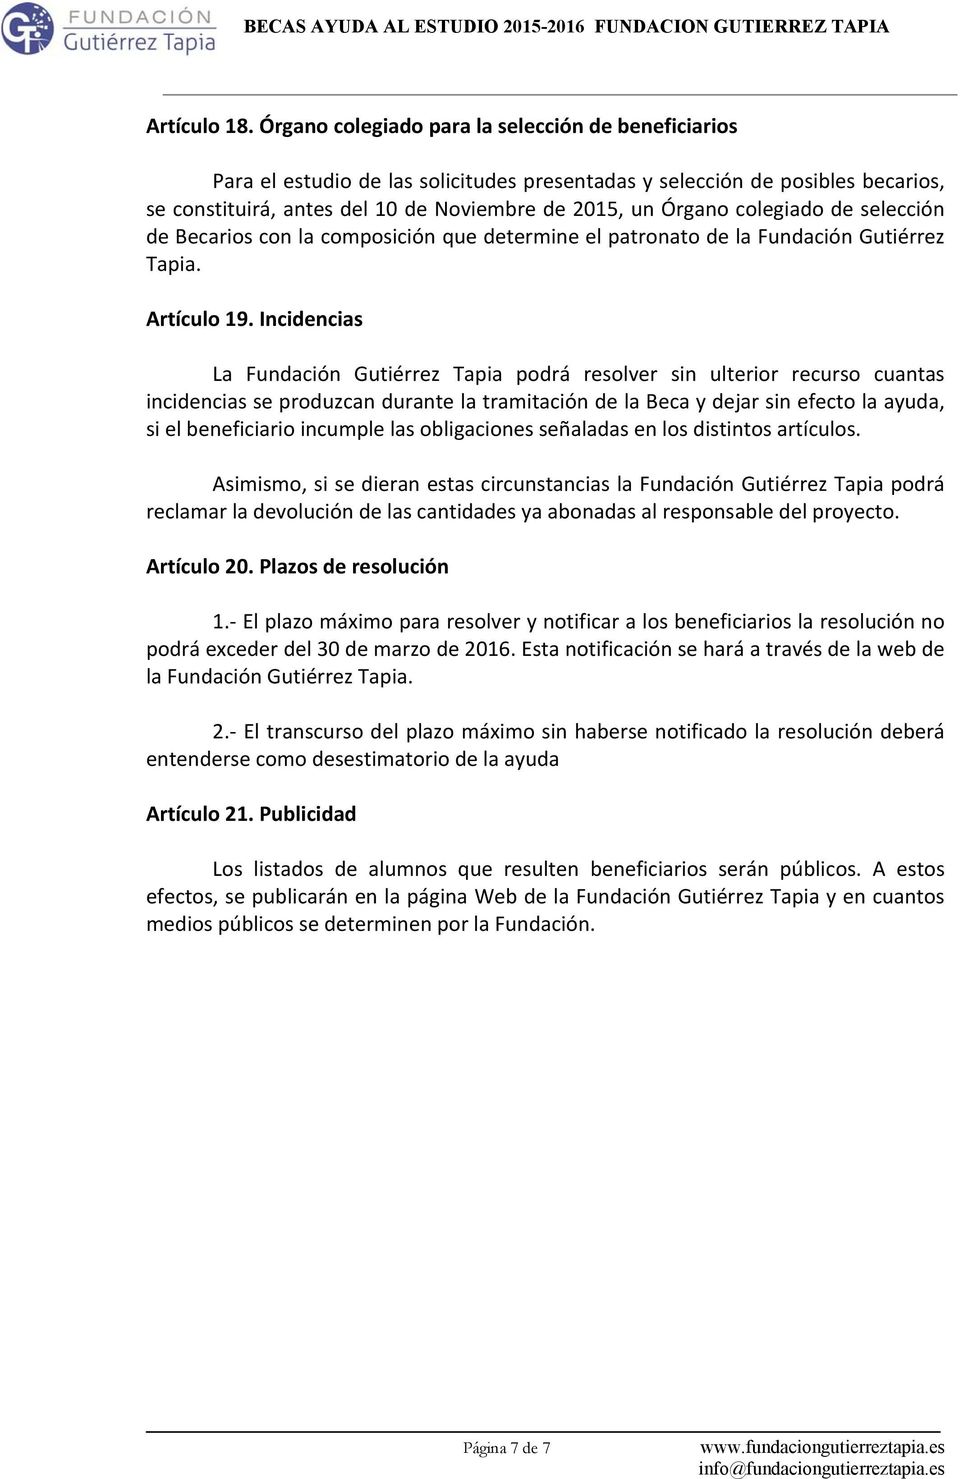 colegiado de selección de Becarios con la composición que determine el patronato de la Fundación Gutiérrez Tapia. Artículo 19.